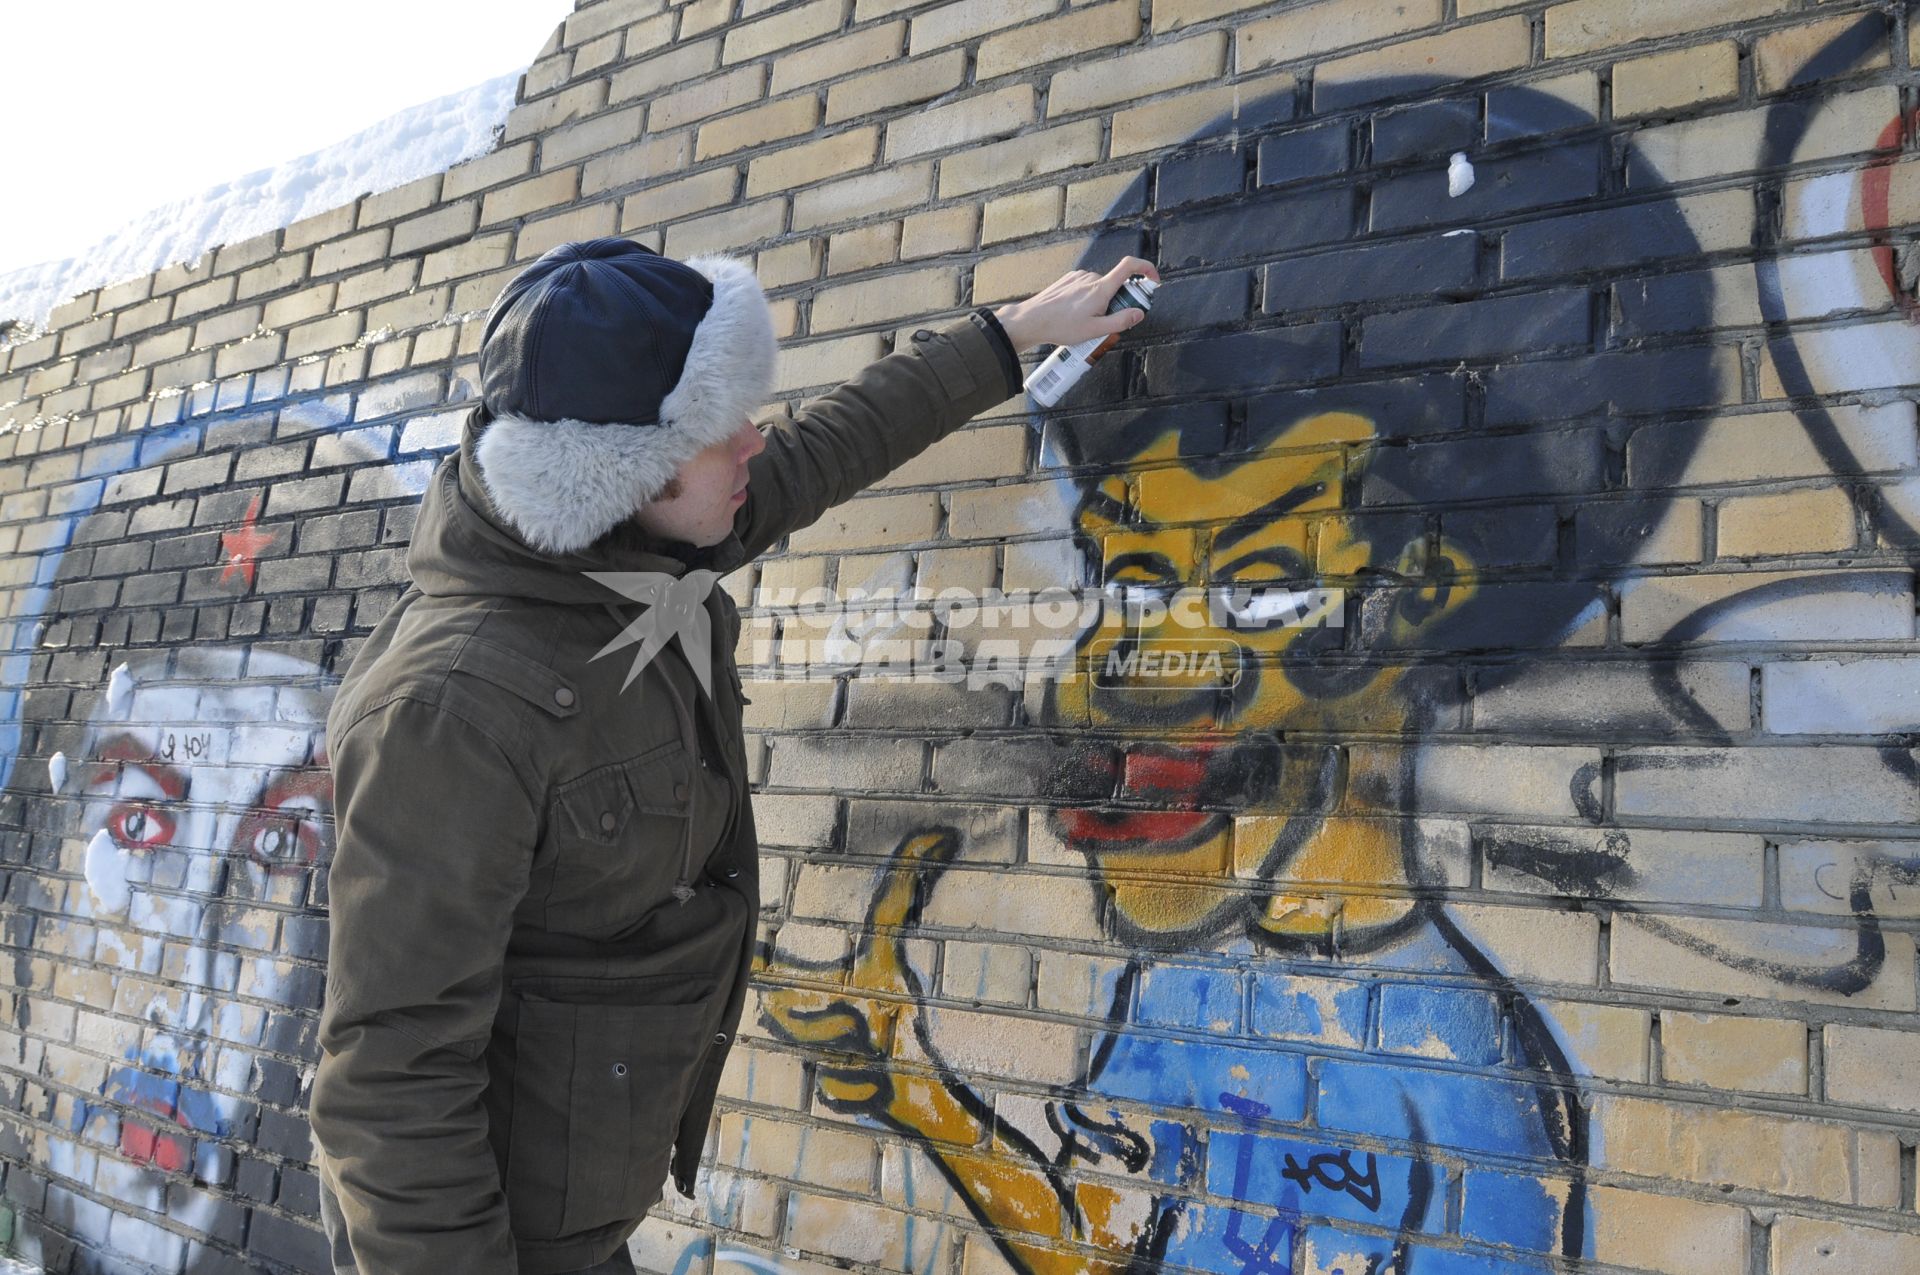 Мужчина рисует граффити на стене.